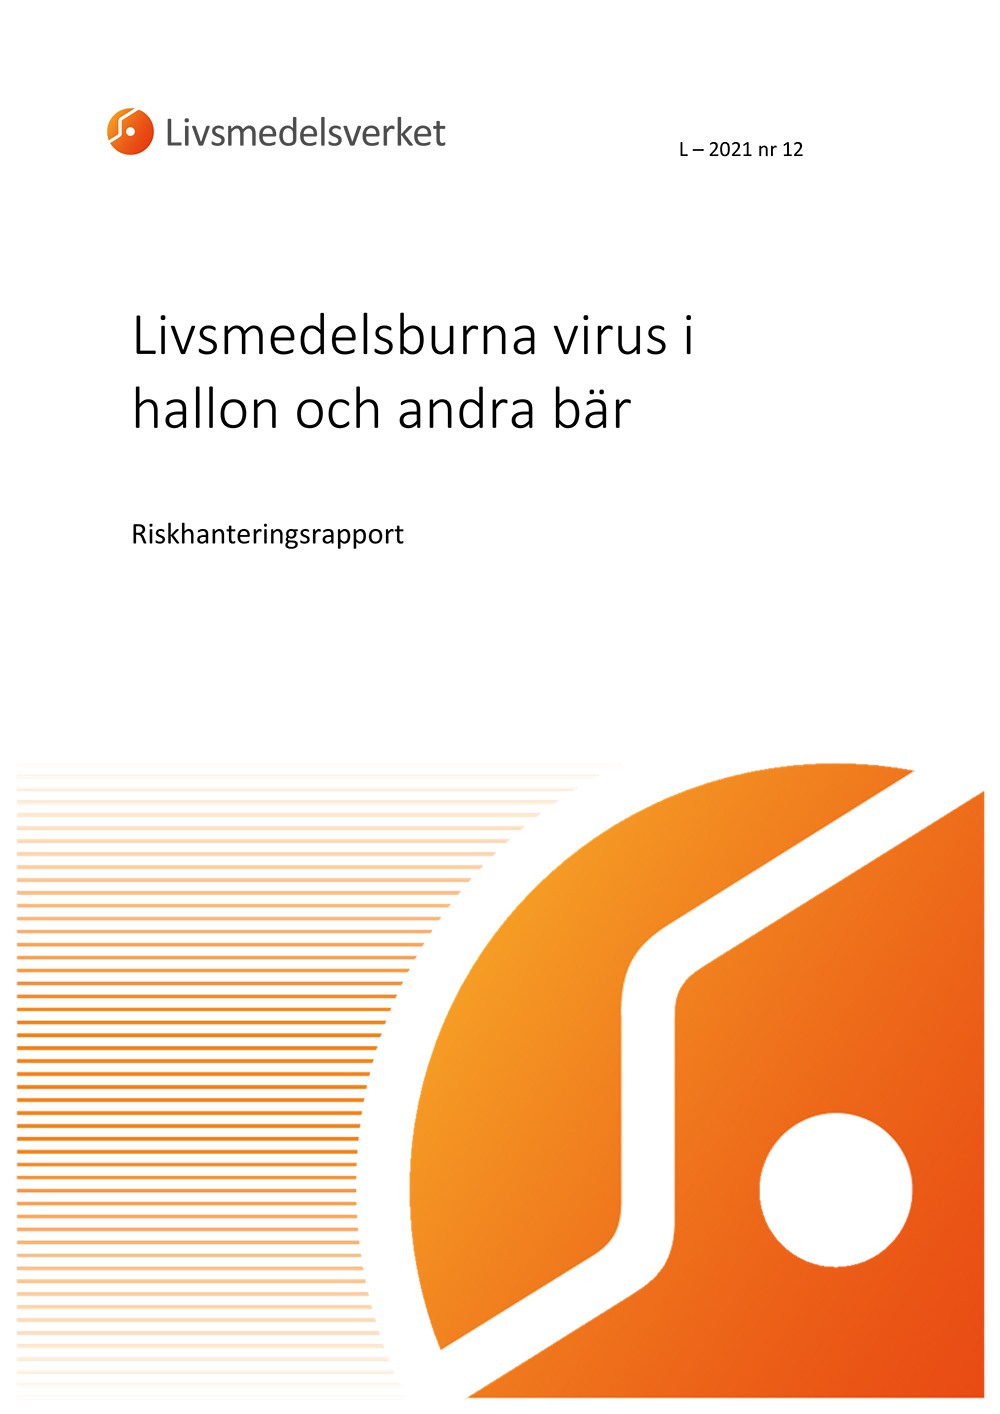 Framsidan av rapport L 2021 nr 12 - Livsmedelsburna virus i hallon och andra bär Riskhantering.